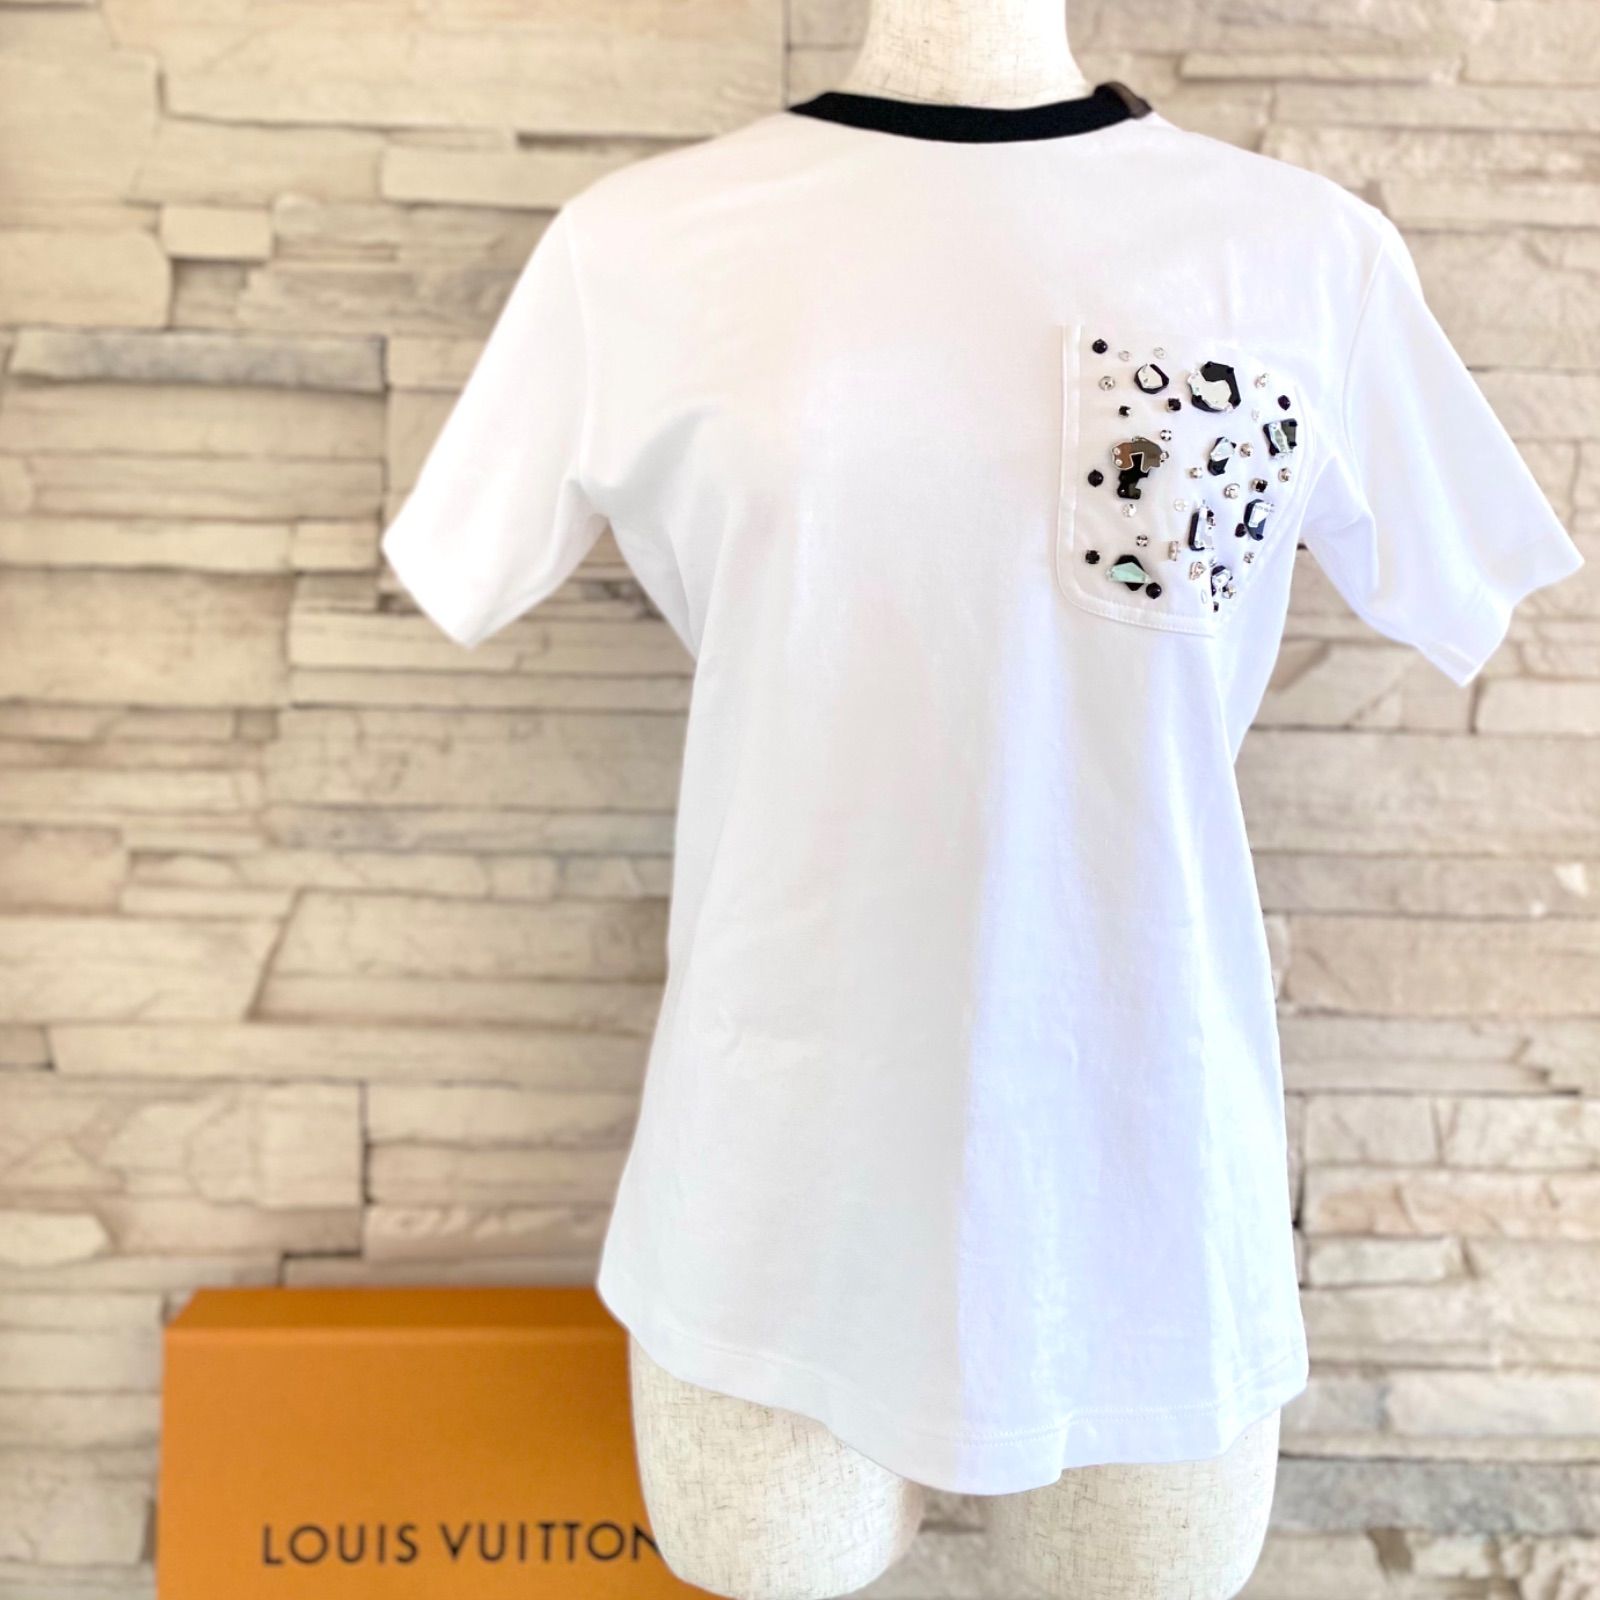 LOUIS VUITTON 】Tシャツ ホワイト ビジュー クリスタル-